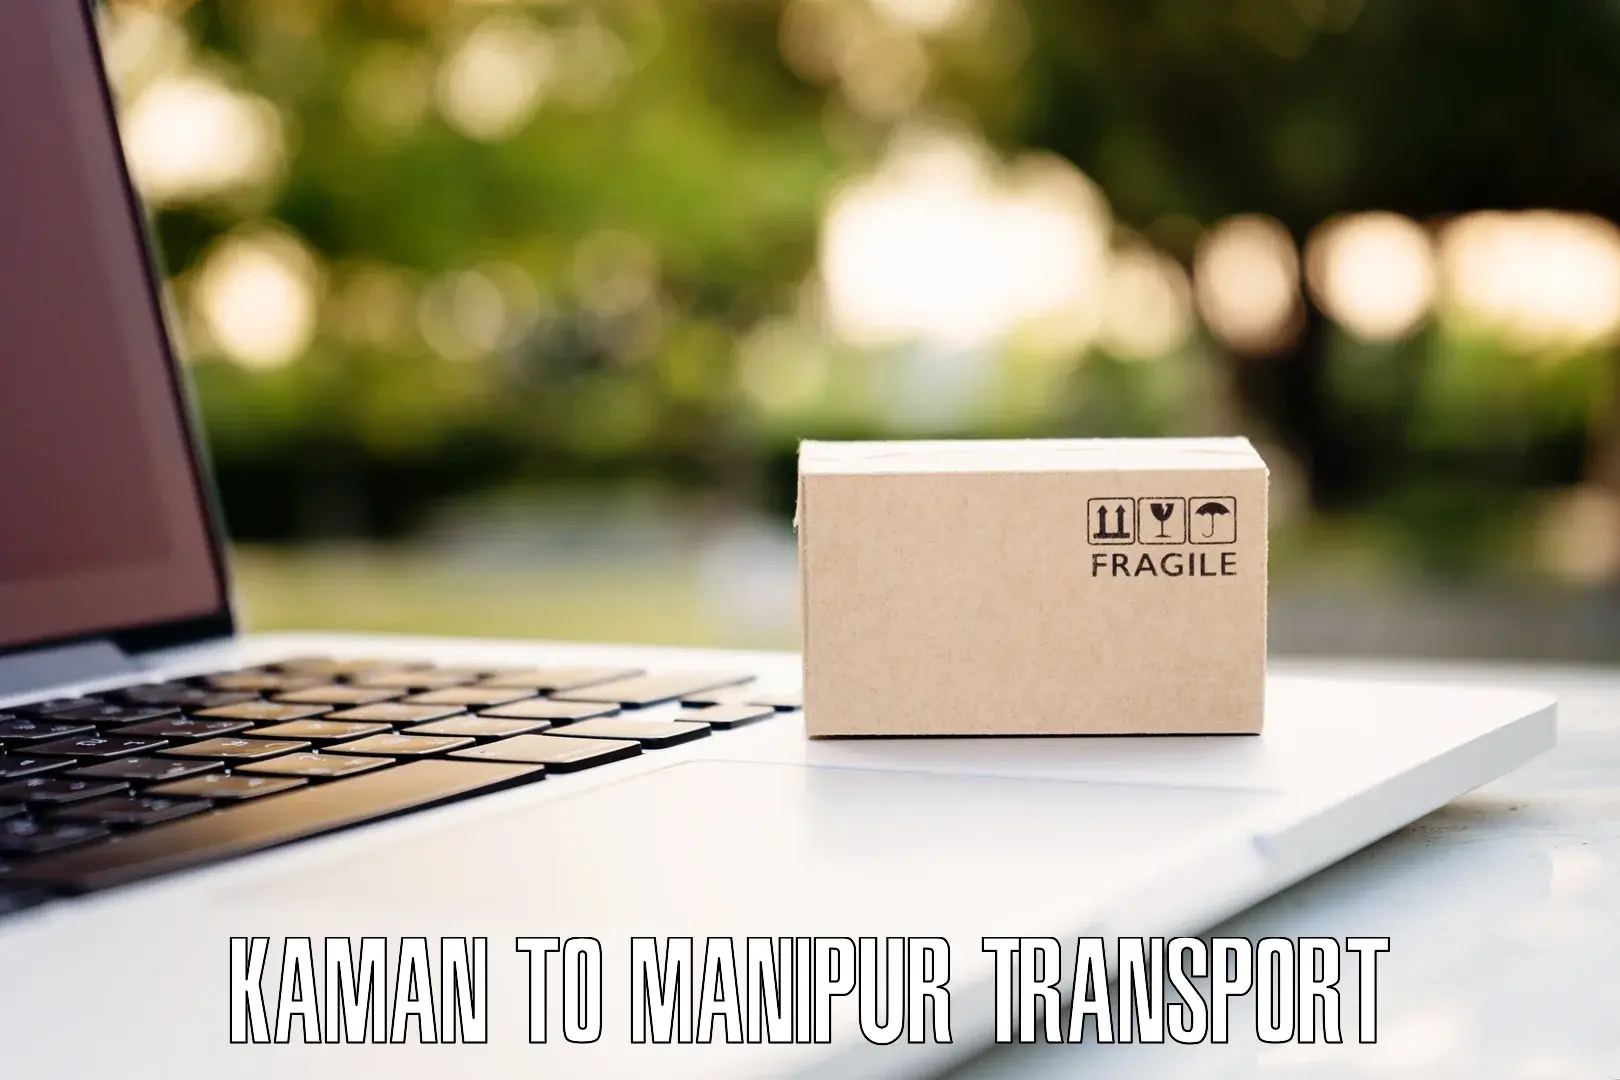 Furniture transport service Kaman to NIT Manipur